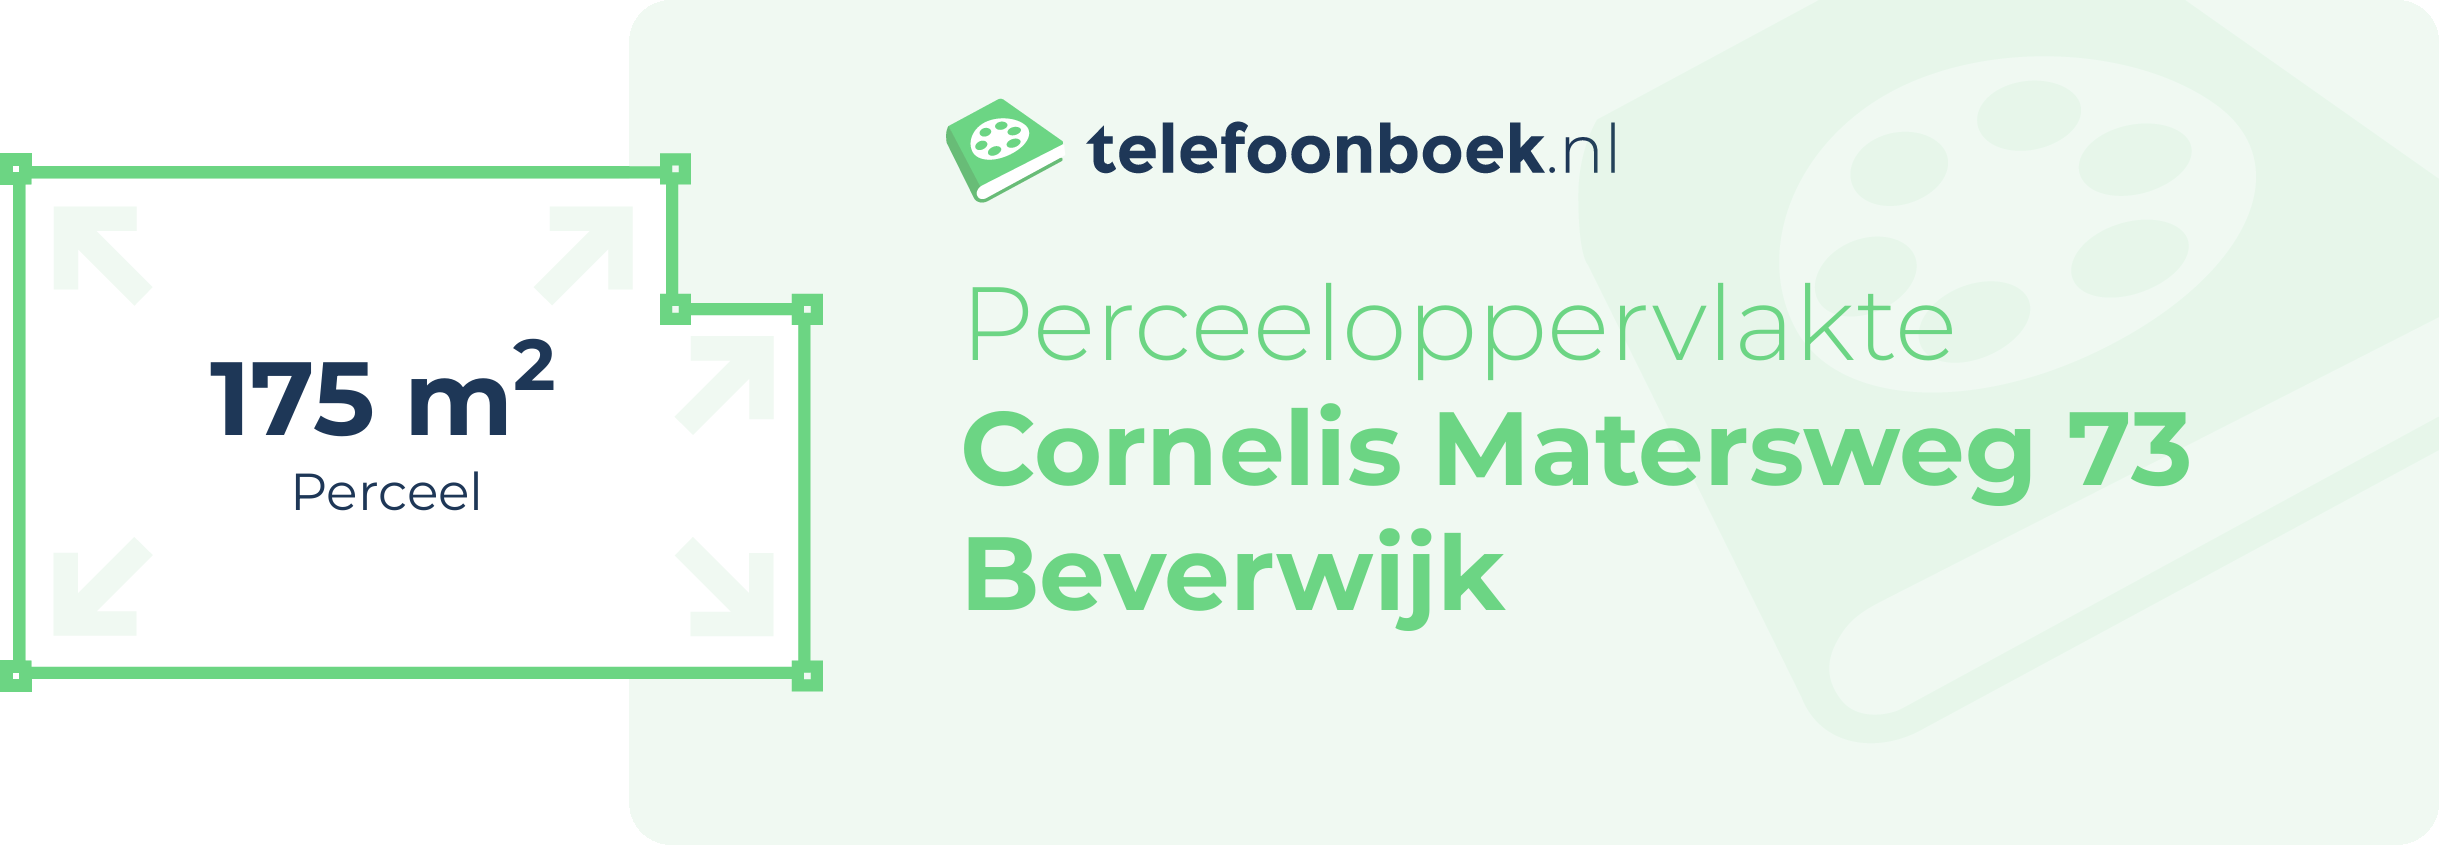 Perceeloppervlakte Cornelis Matersweg 73 Beverwijk